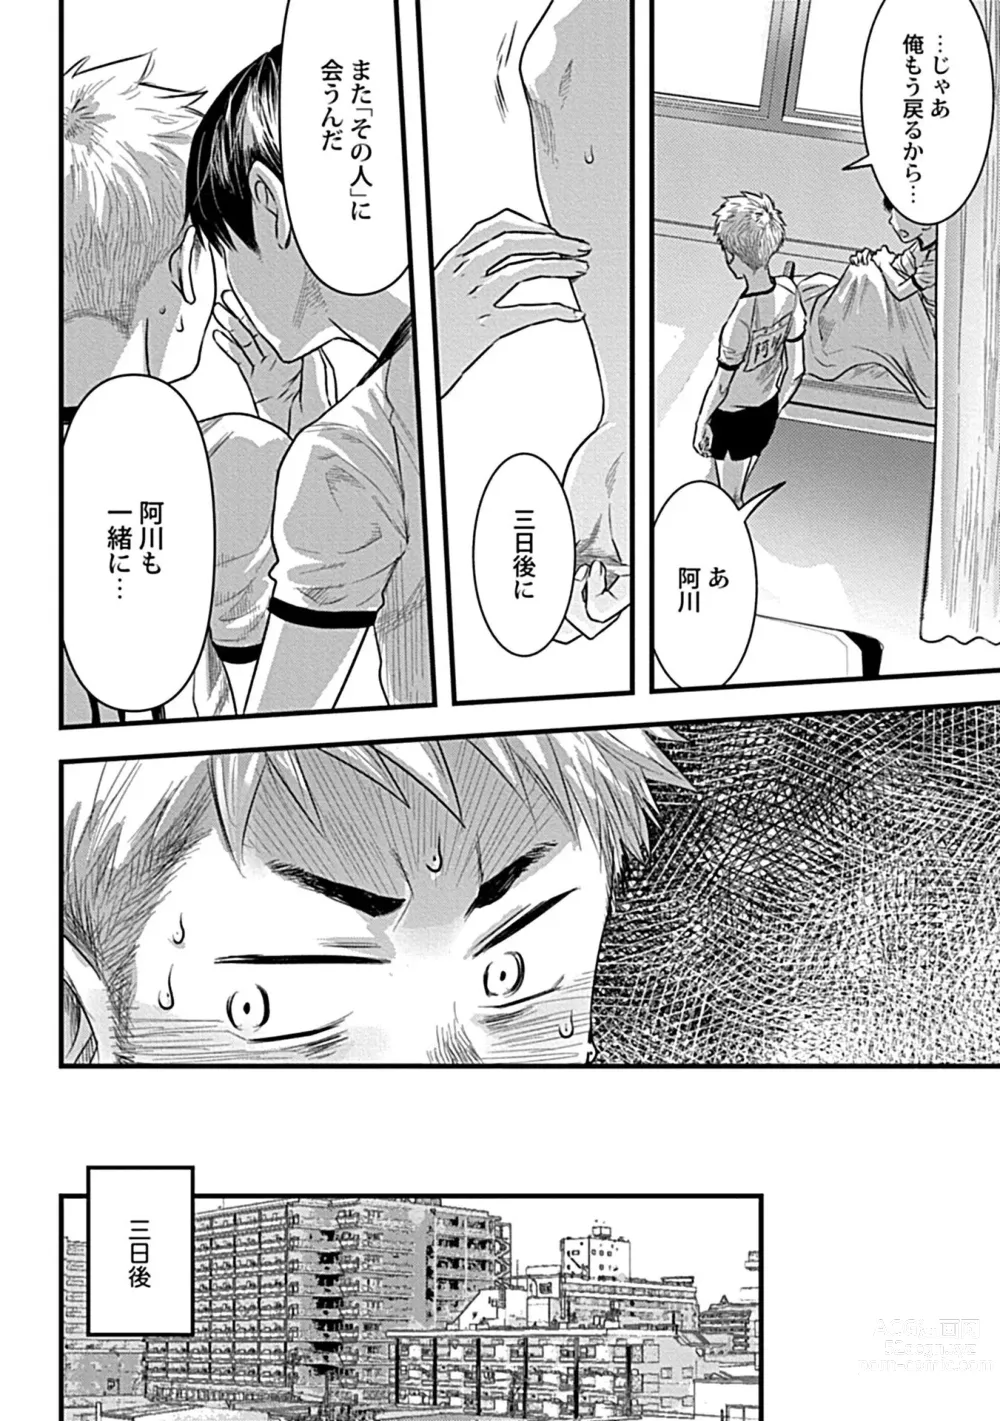 Page 12 of manga Zutto Kimi o Mite Ita